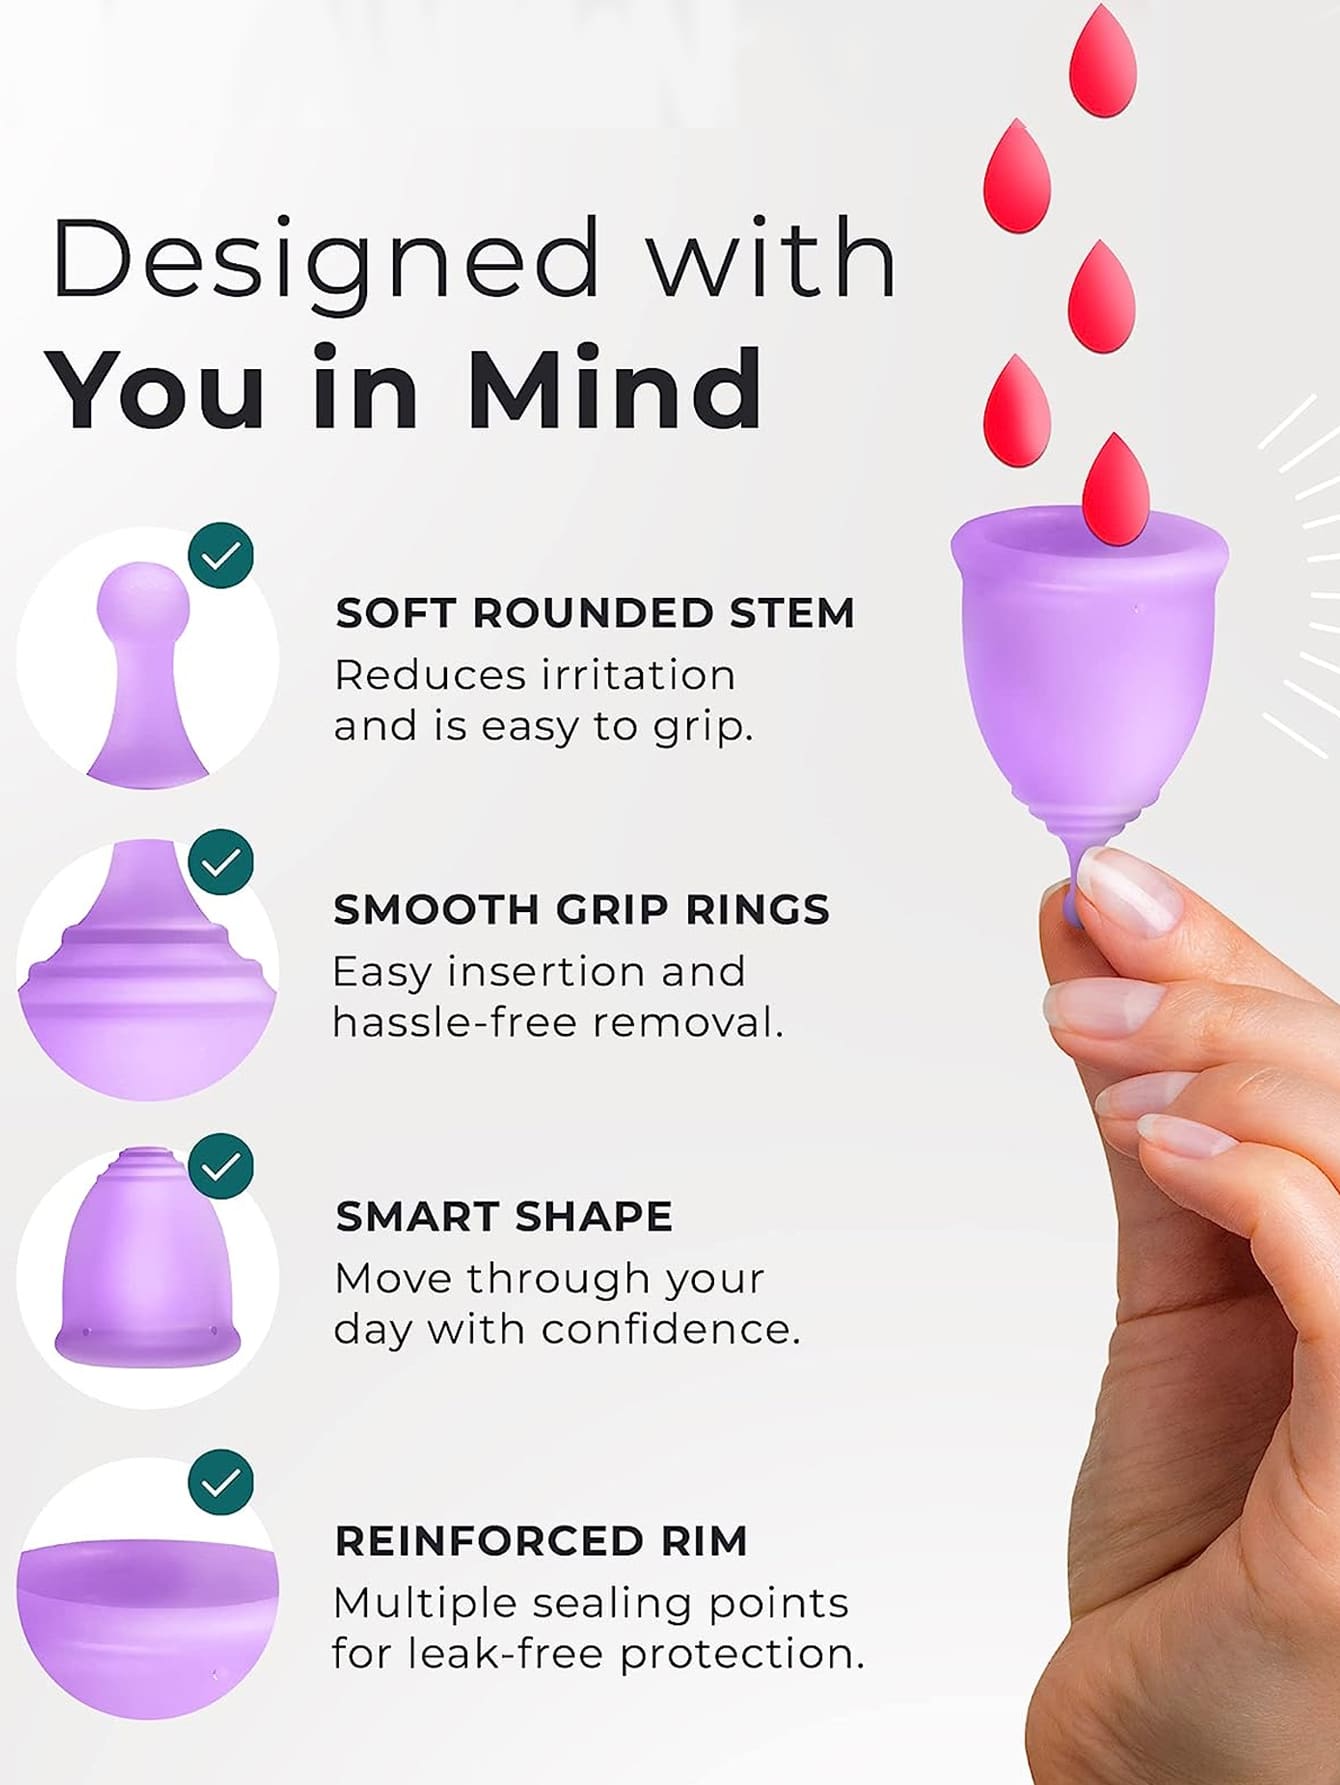 4737 a08-09 Una Pieza Copa Menstrual Reutilizable De Silicona De 12 Horas En Color Púrpura Para La Protección Del Período De La Mujer